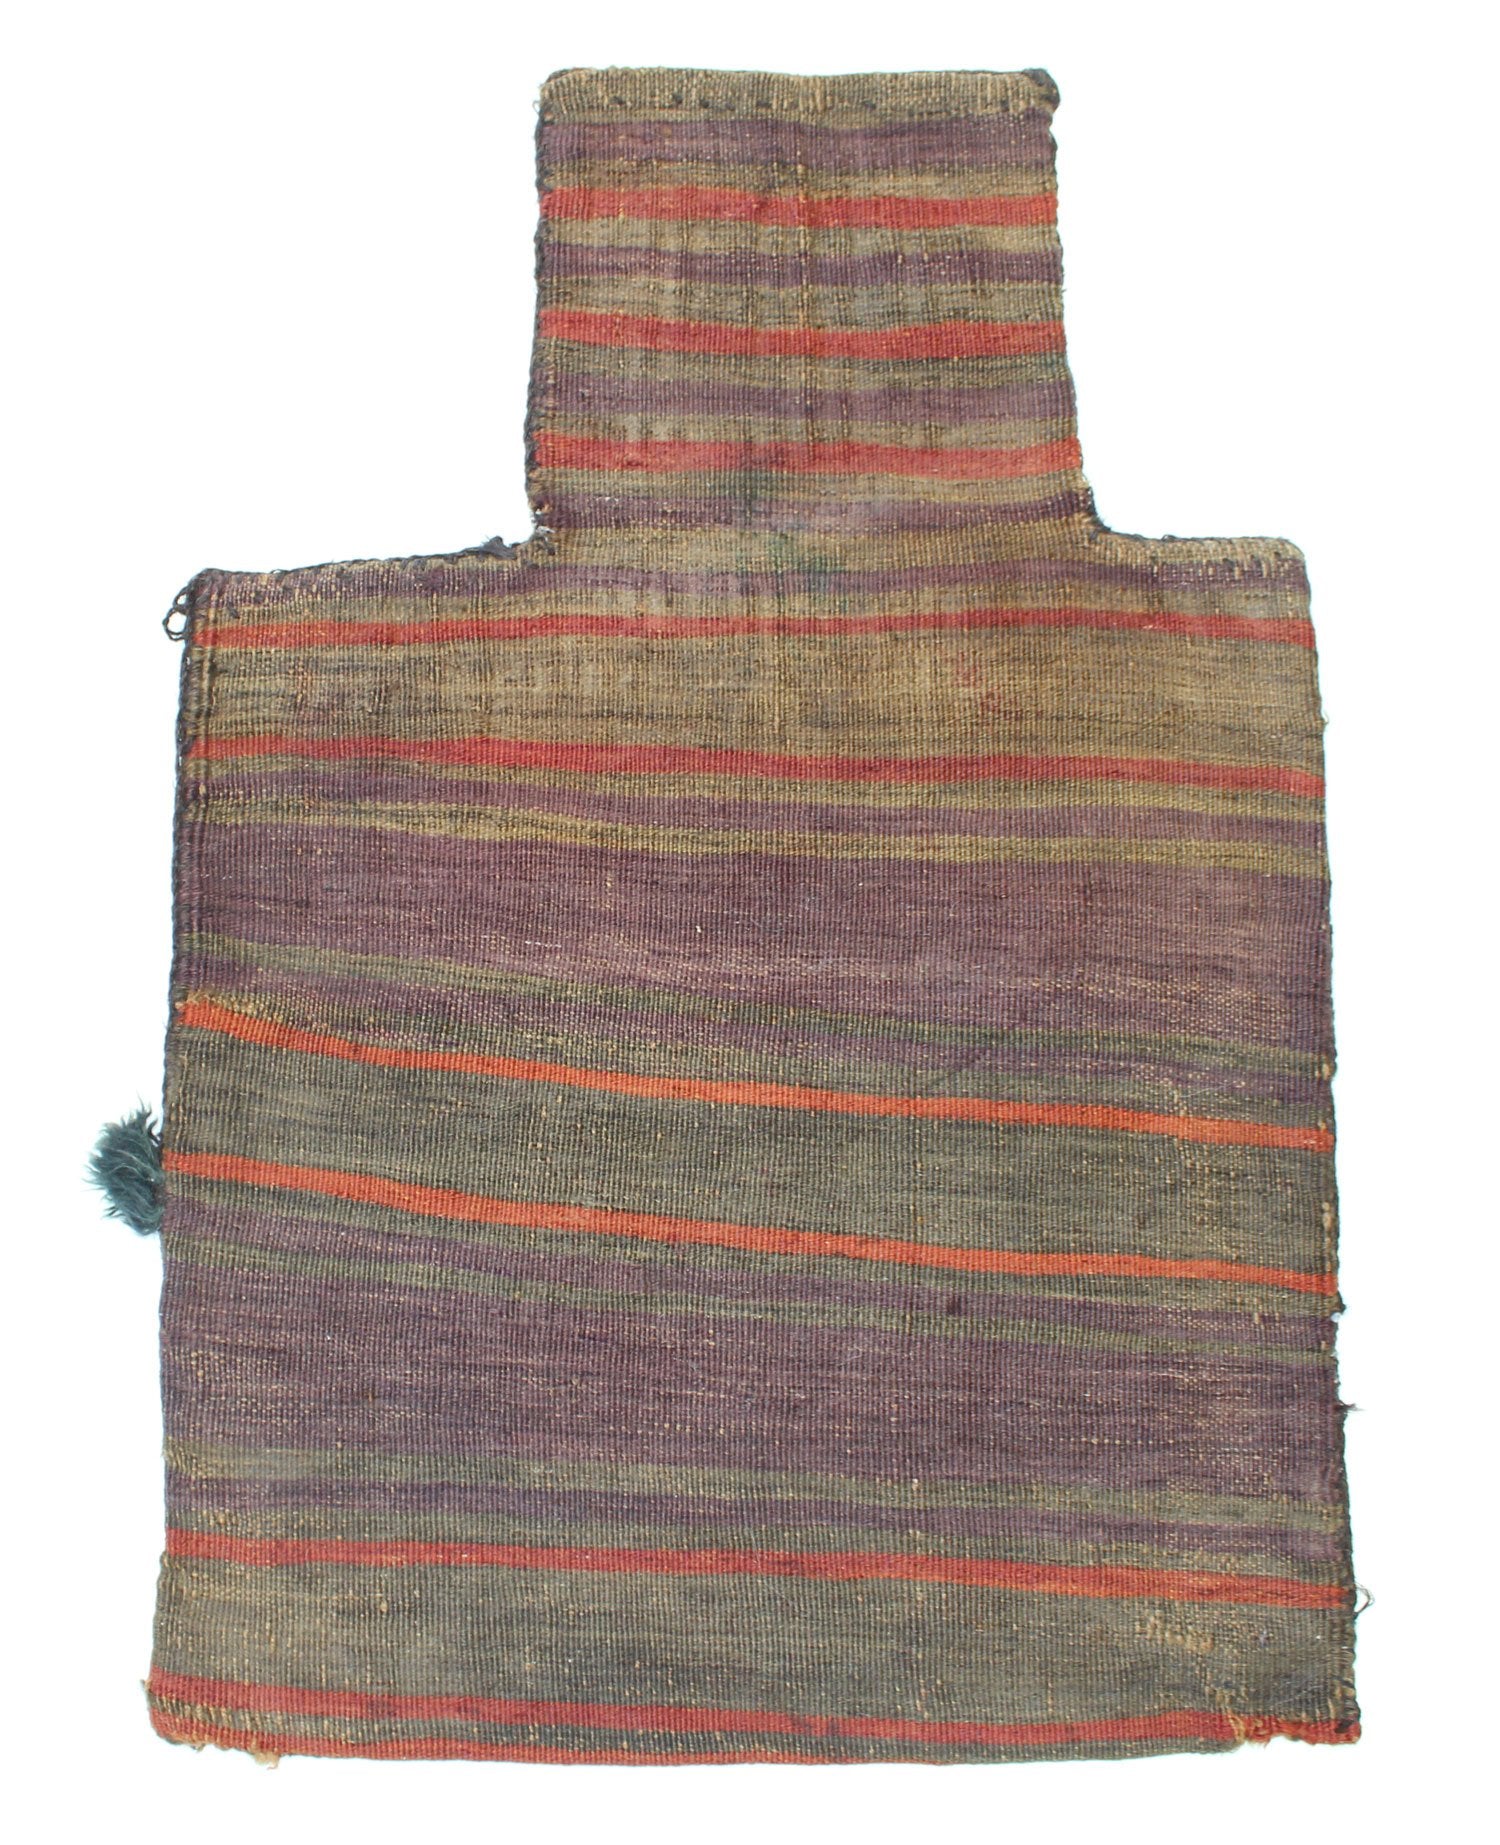 Vintage Salt Bag Handwoven Tribal Rug